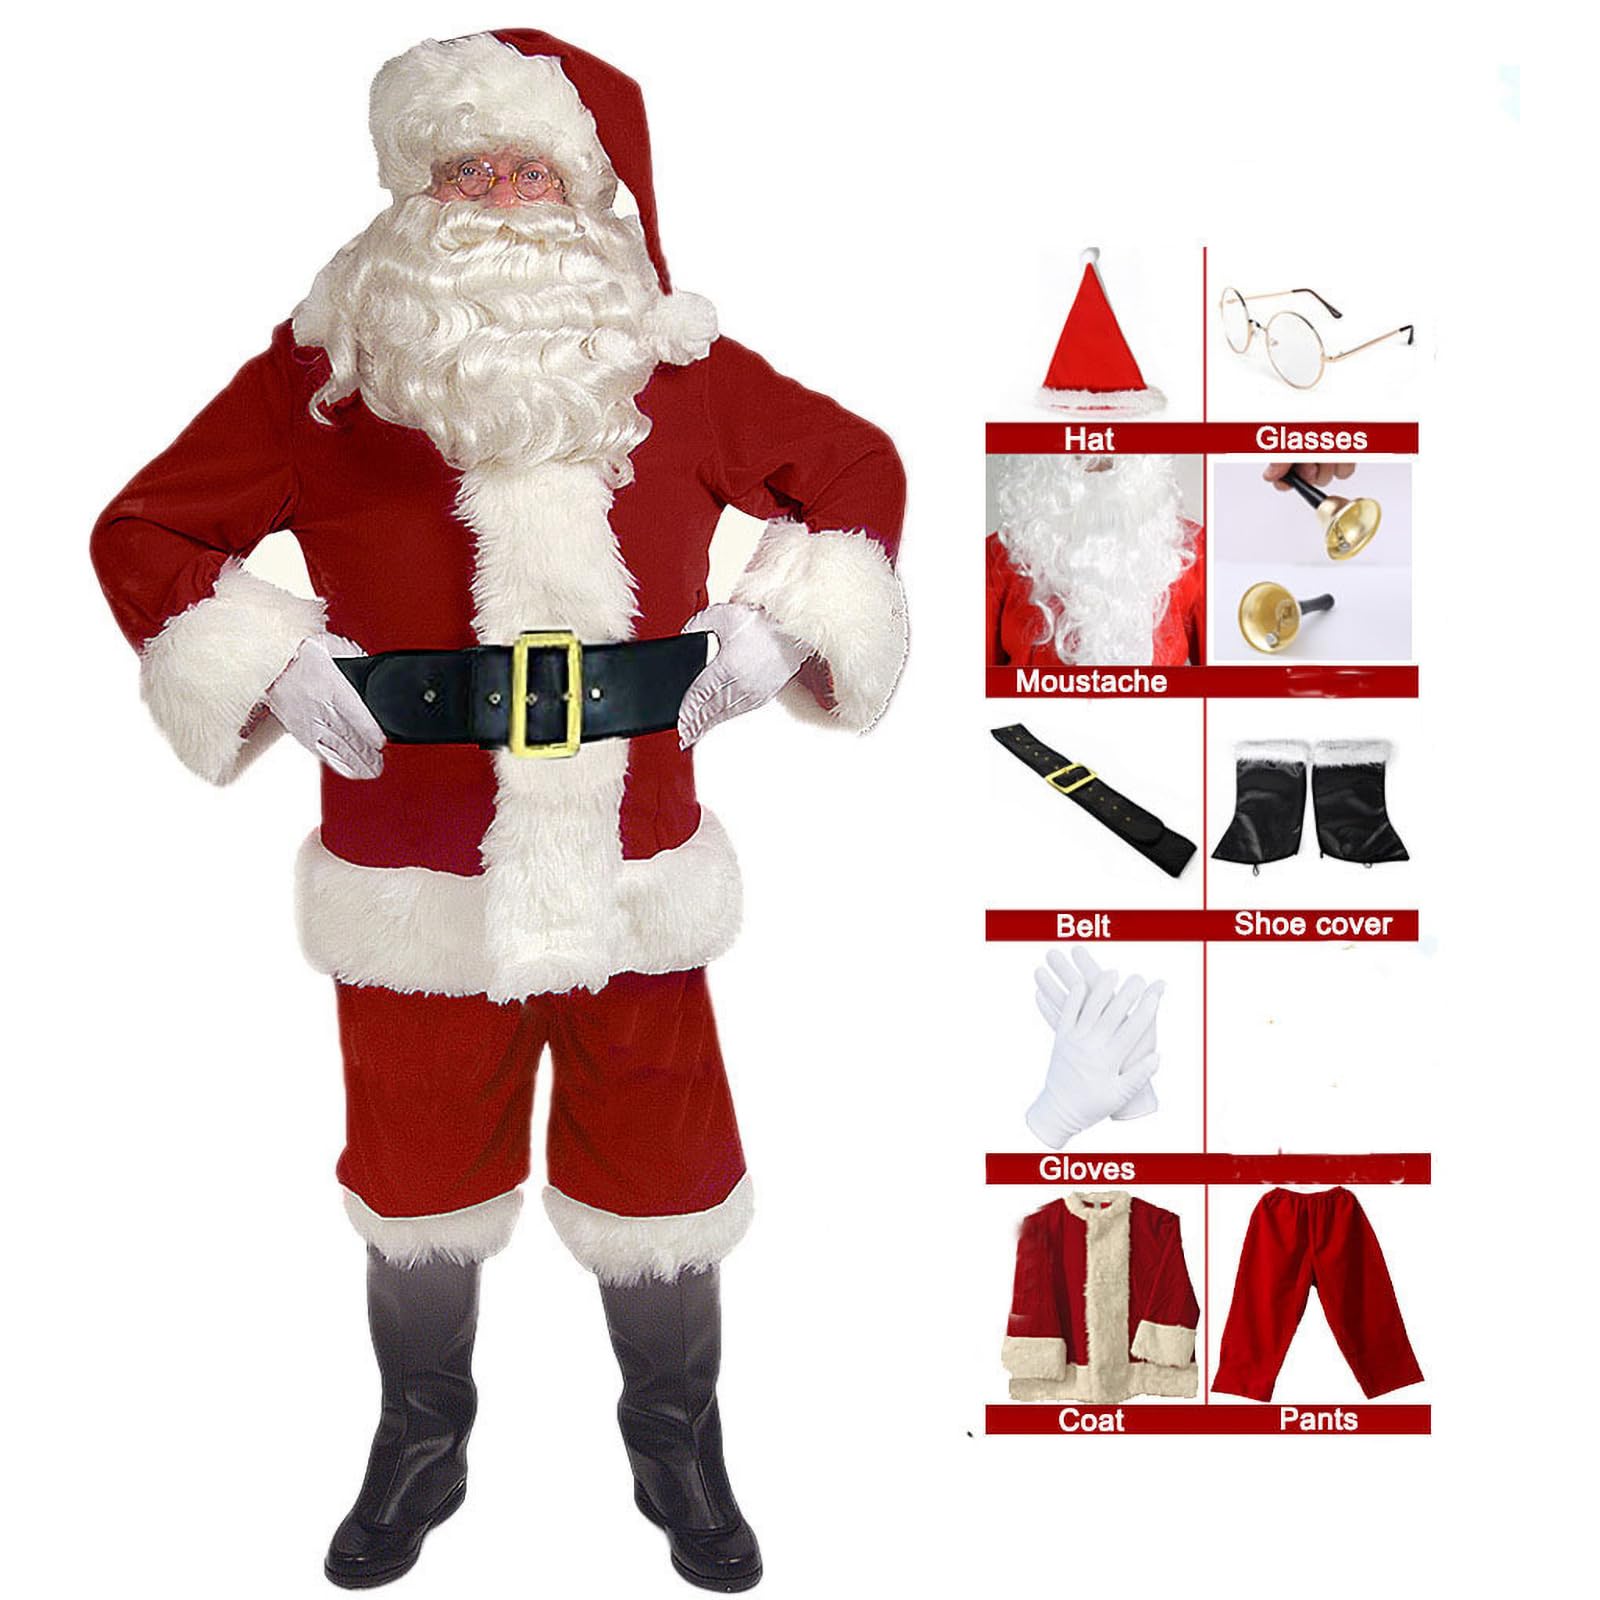 EXQUILEG Weihnachtsmann Kostüm für Herren, Weihnachtsmannkostüm mit Mütze Bart Gürtel und Handschuhe - Weihnachtskostüm Nikolauskostüm Weihnachtskostüme Kostüme (9-Teiliges,XXL)